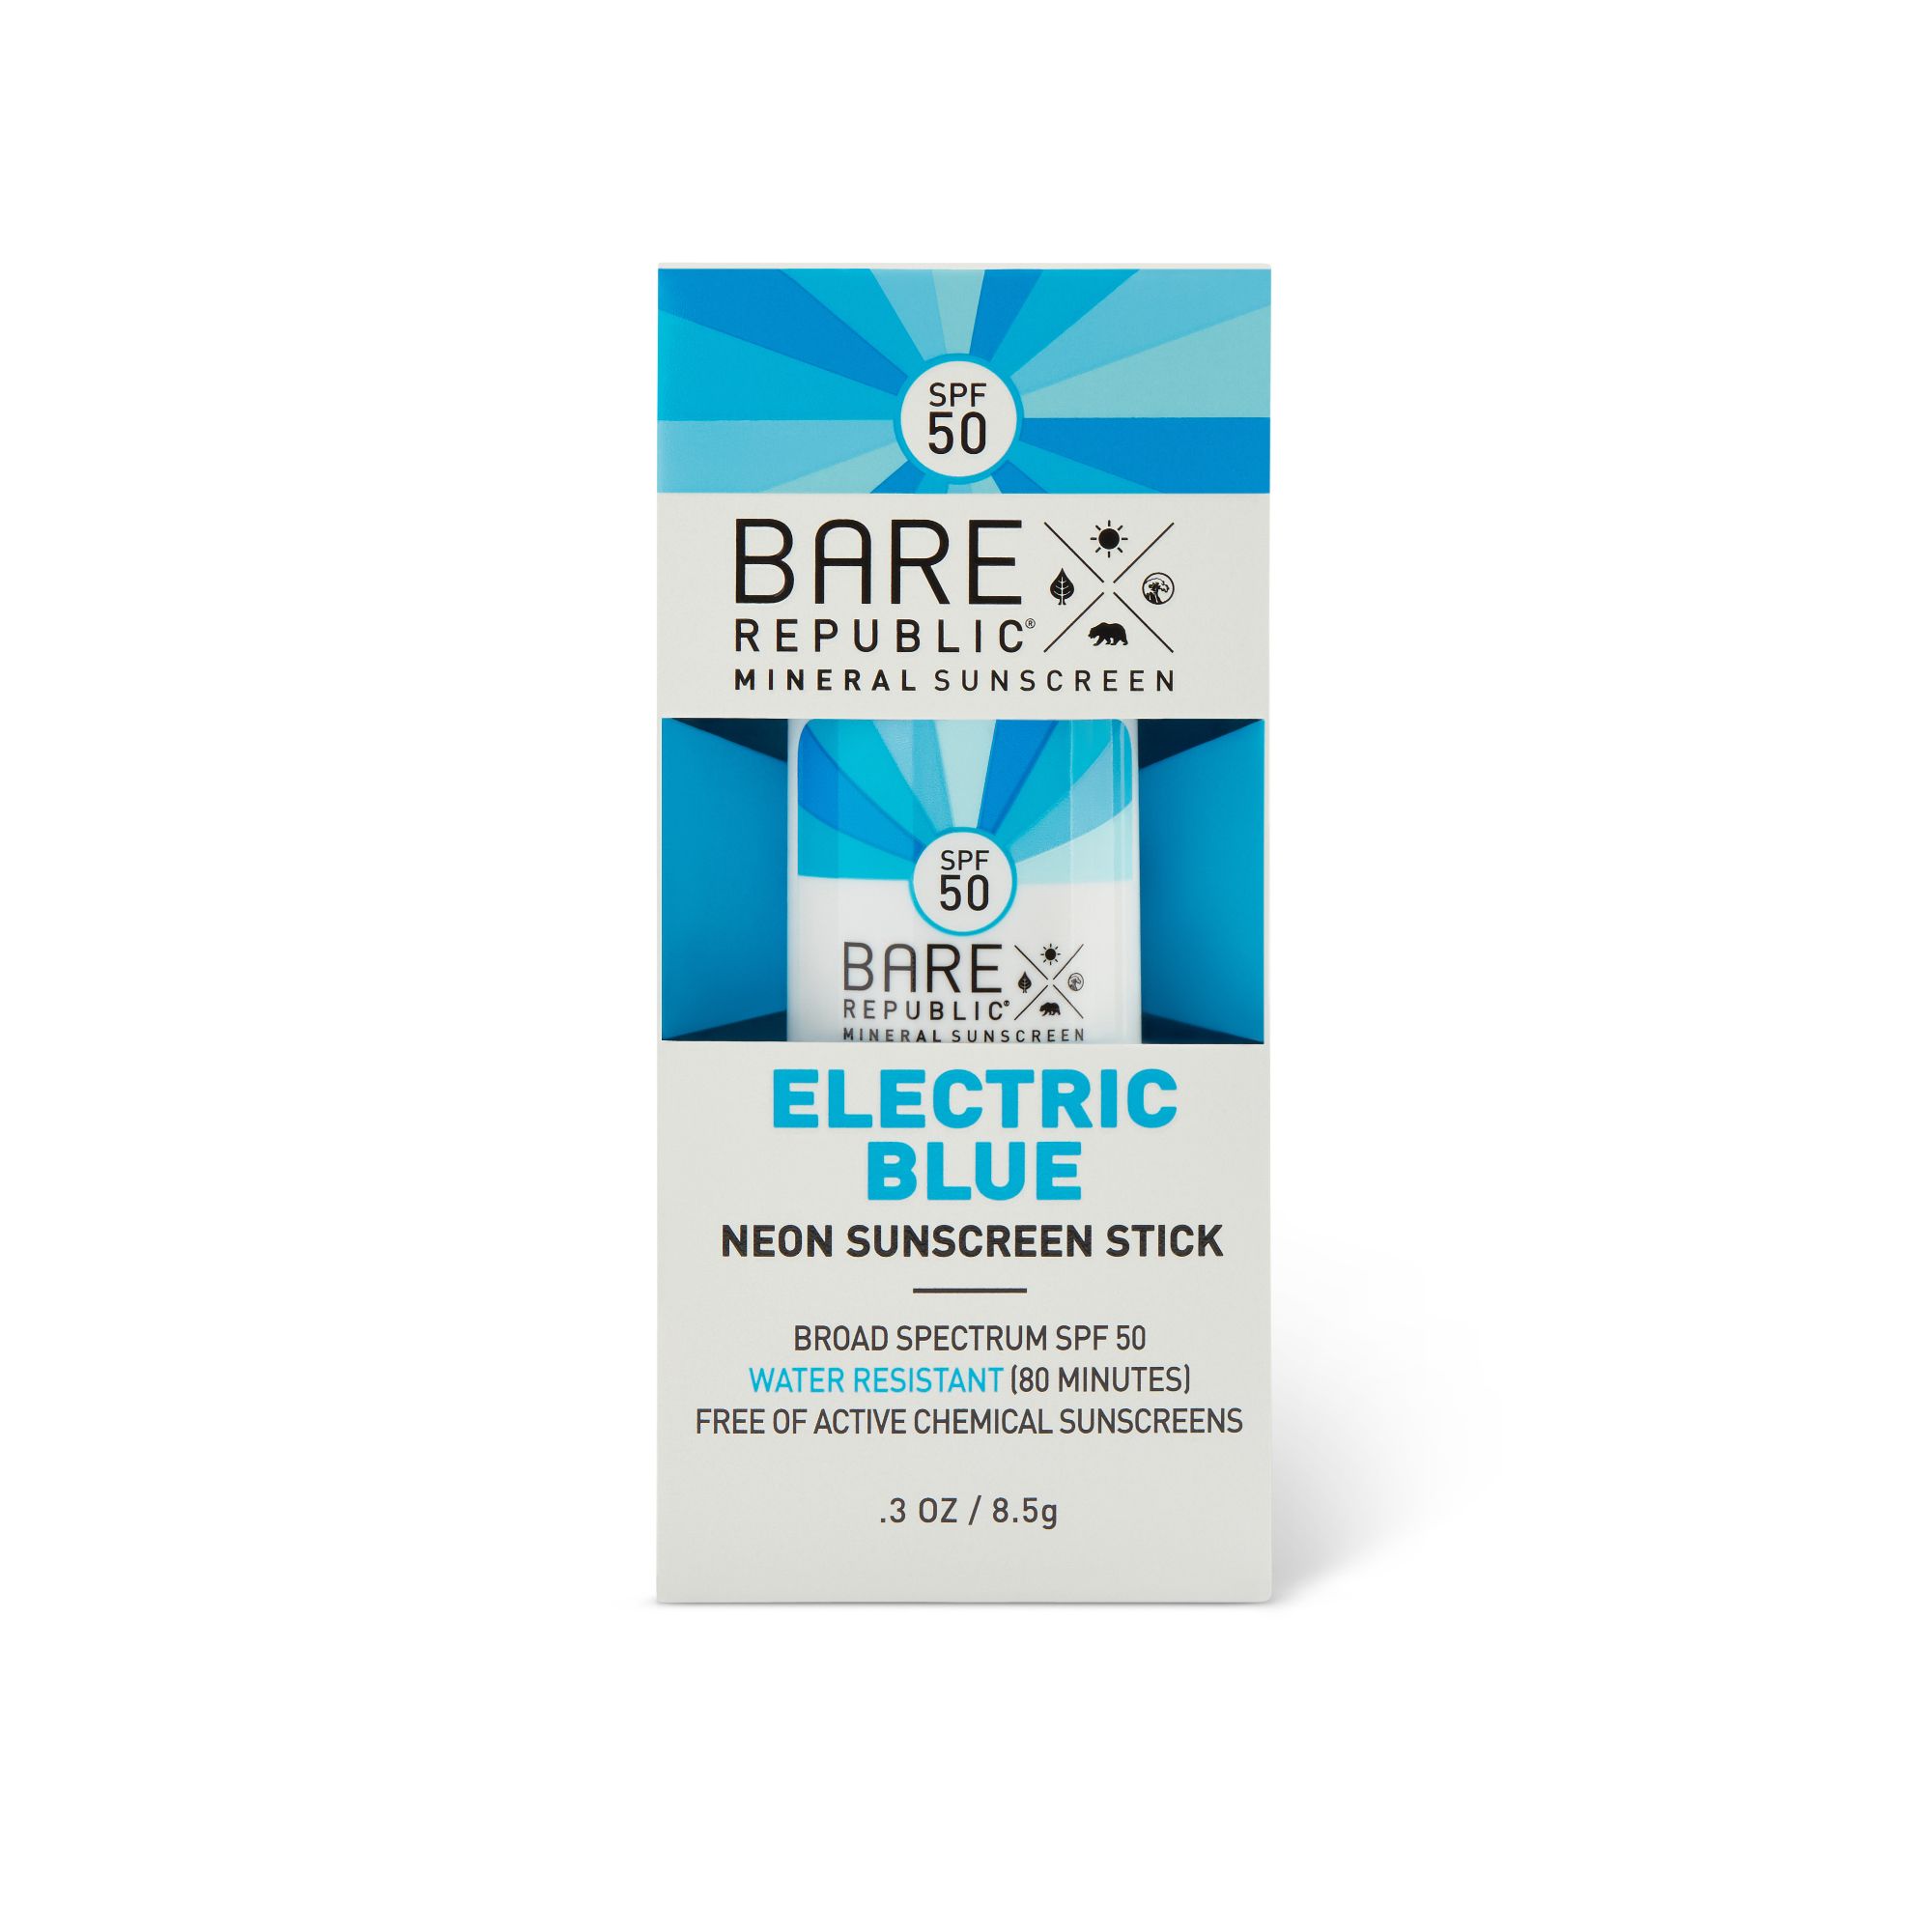 DISCBare Republic Mineral Sunscreen Neon Stick, Blazing Blue, SPF 50 - 0.3 oz